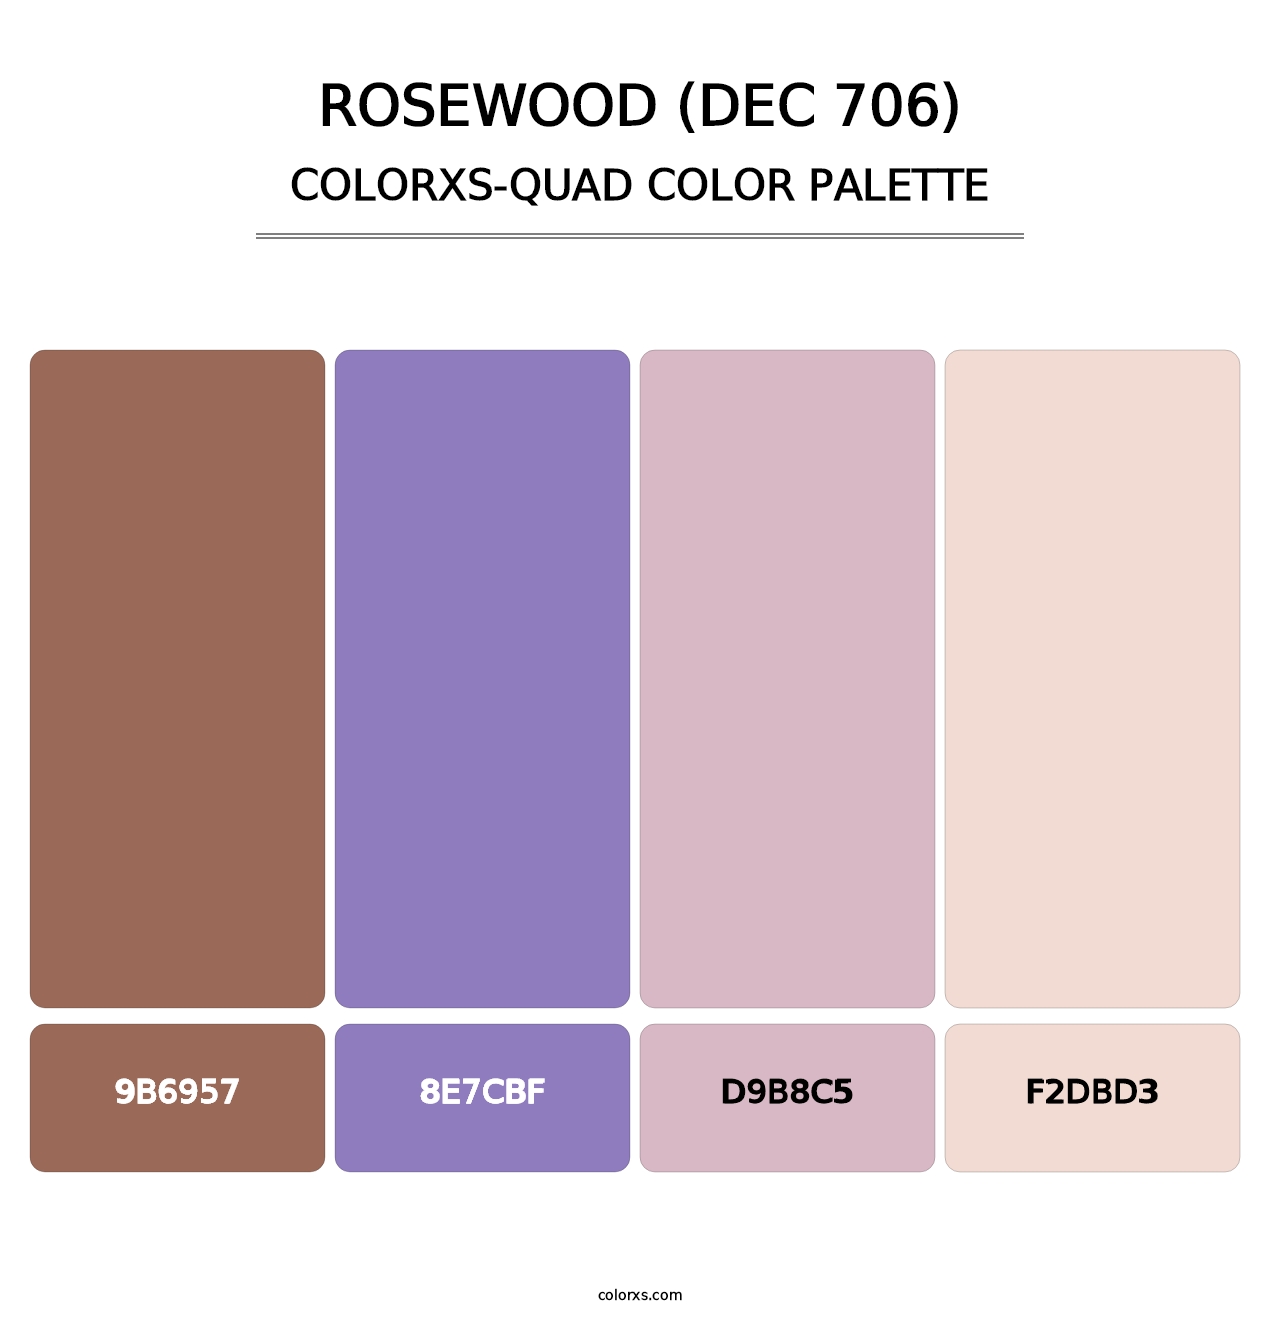 Rosewood (DEC 706) - Colorxs Quad Palette